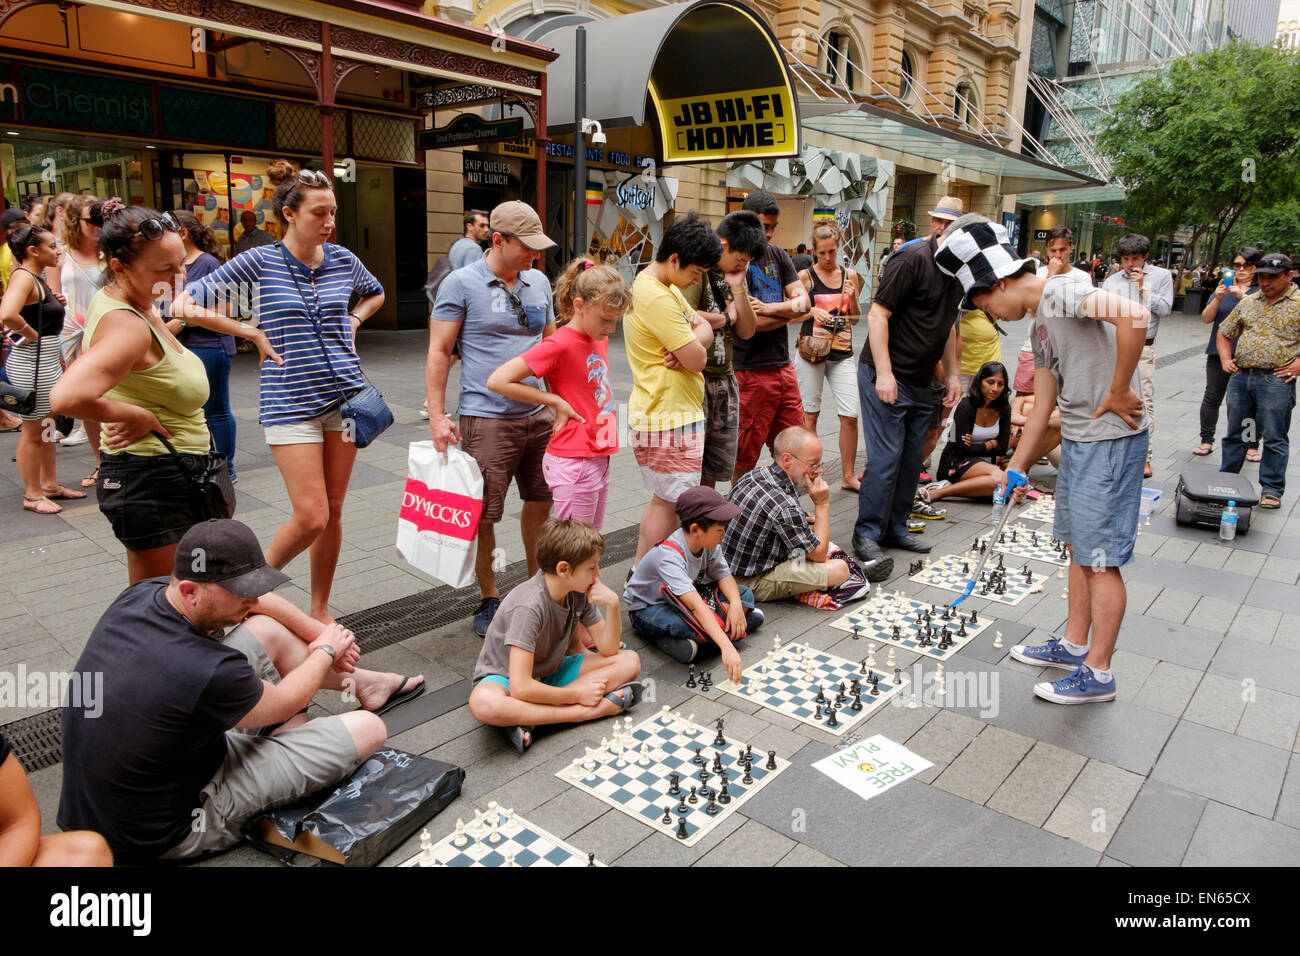 Giovane uomo in una strada pedonale la riproduzione simultanea di scacchi con diverse persone, mentre gli altri stanno a guardare. Scheda esterna; gioco all'aperto; pubblico Foto Stock